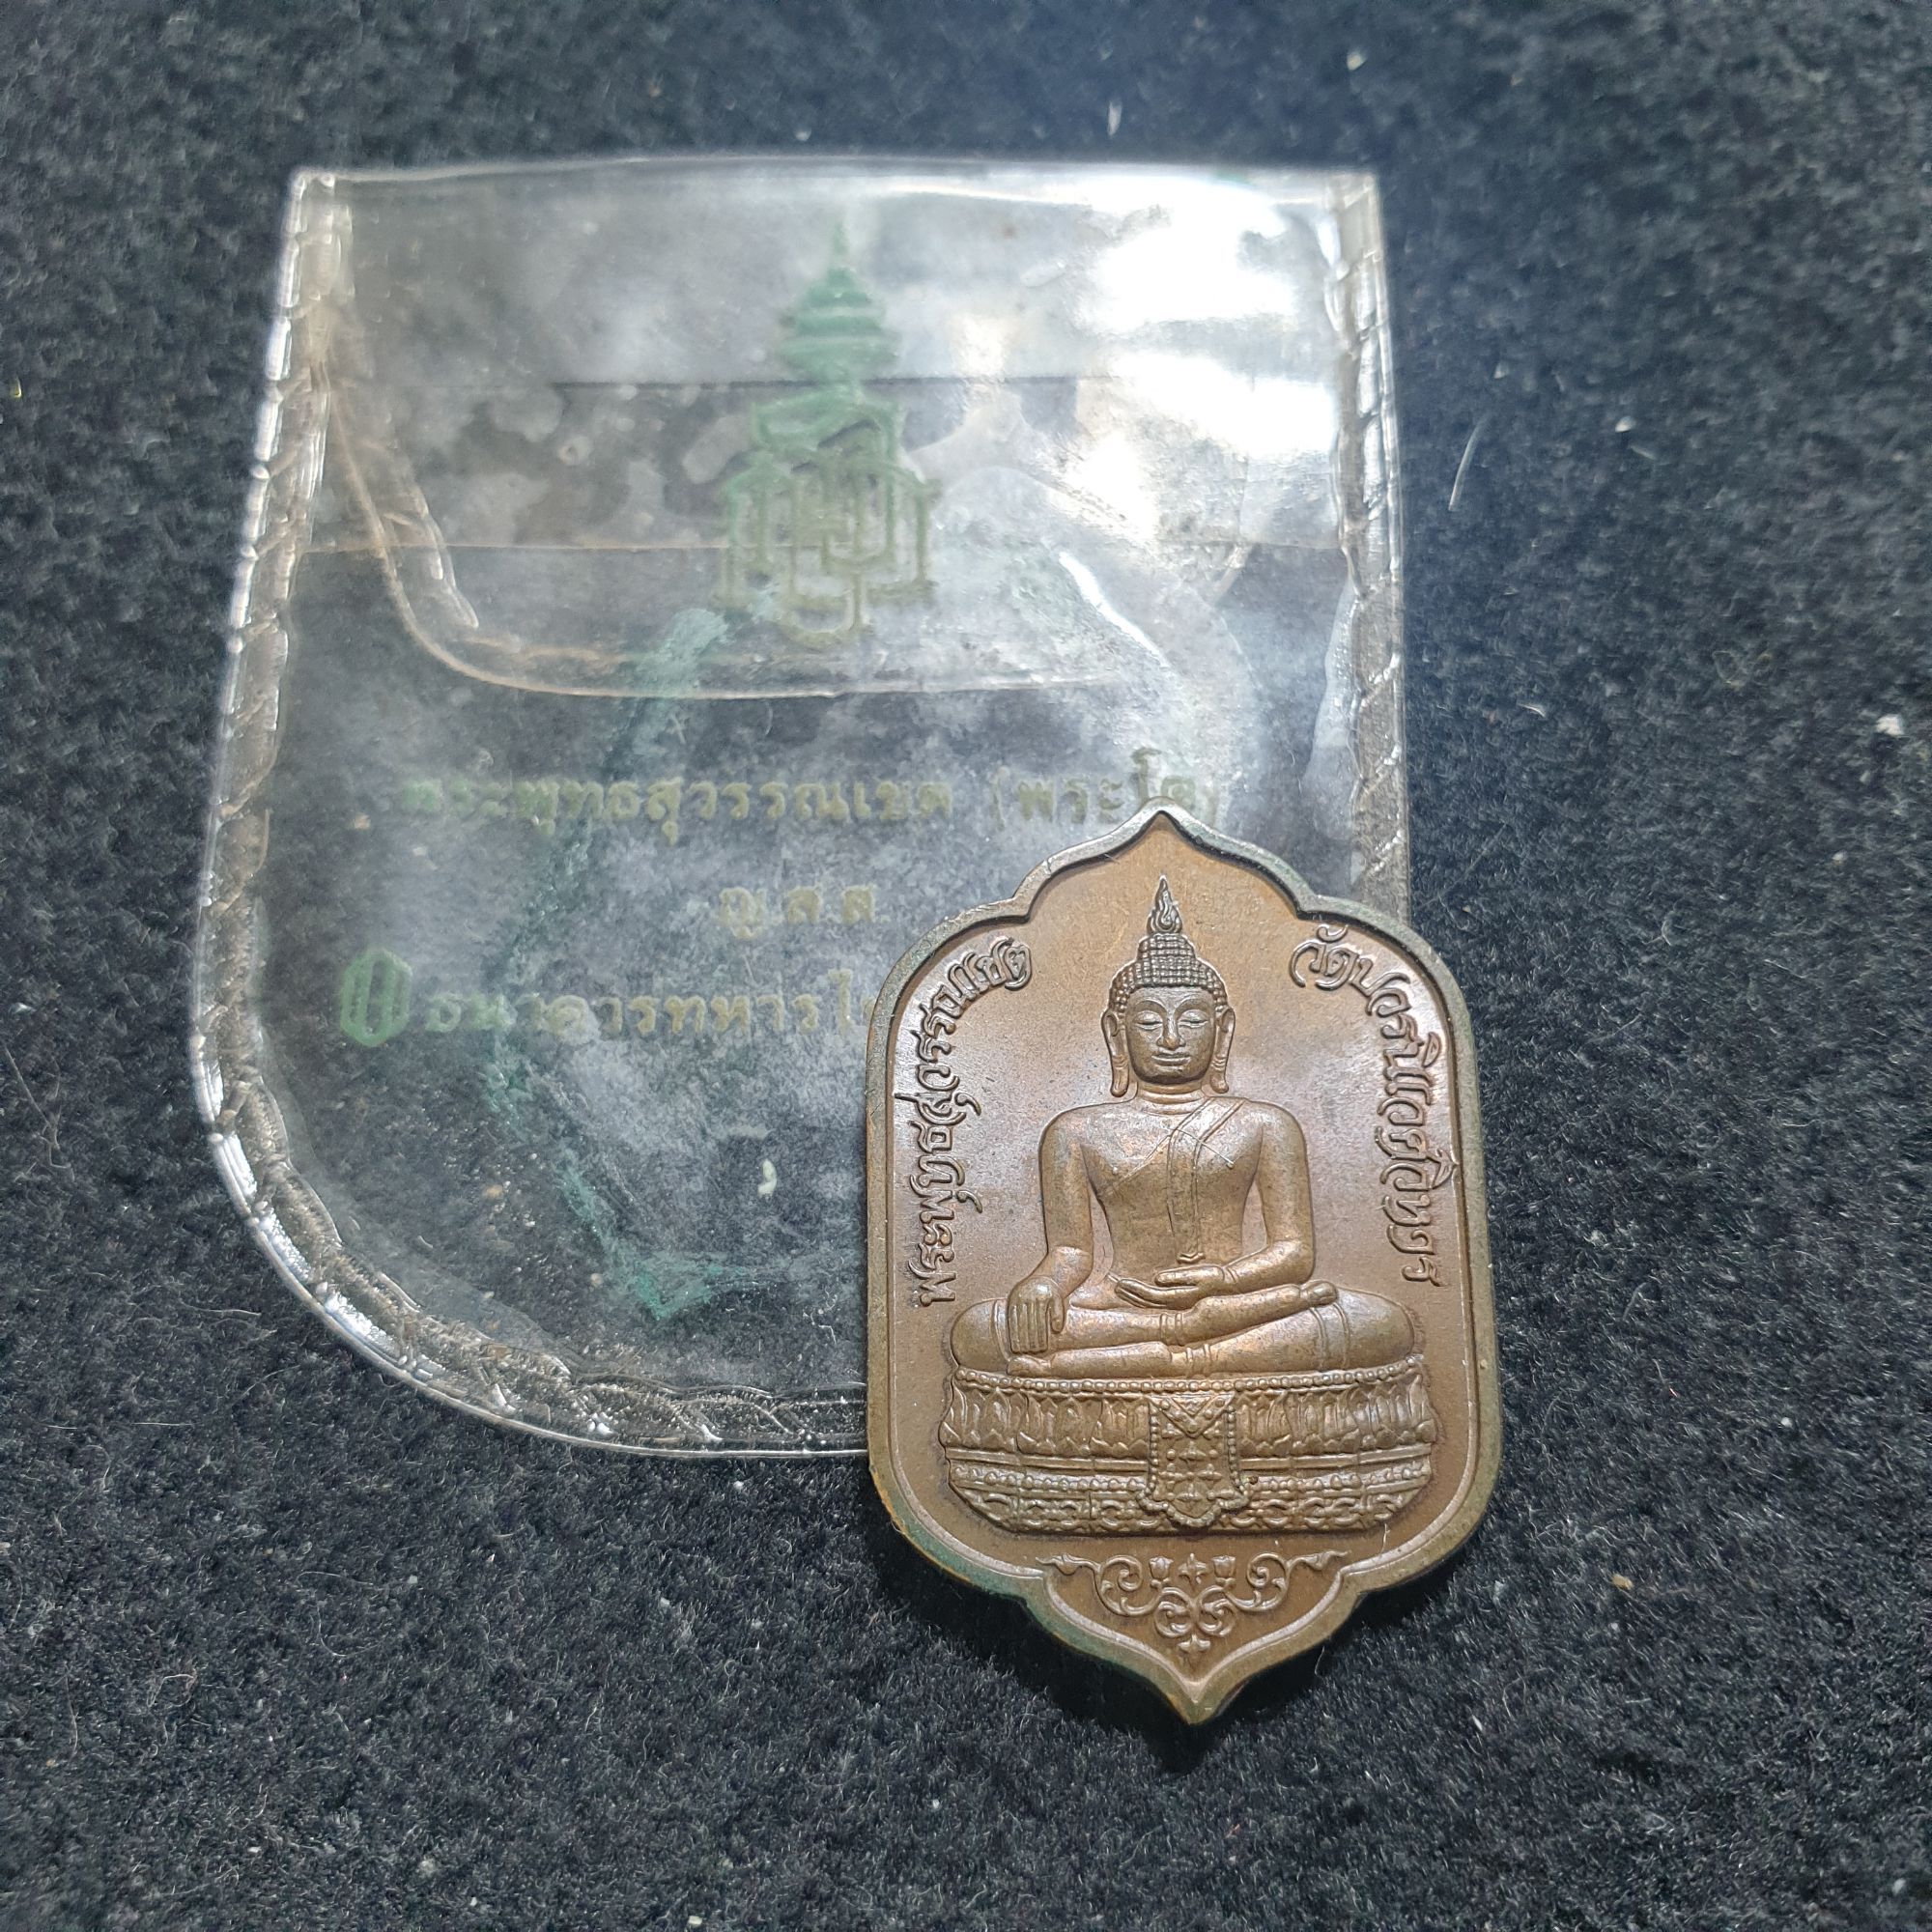 เหรียญพsะพุทธสุวssณเขต(พระโต) ญ.ส.ส. ที่sะลึก ธนาคาร ทหารไทย สร้างถวาย ครบ 77 พรรษา สังฆราช วัดบวรนิเวศ ปี33 เนื้oทoงแดง บล๊อคกษาปณ์ (สำเนา)